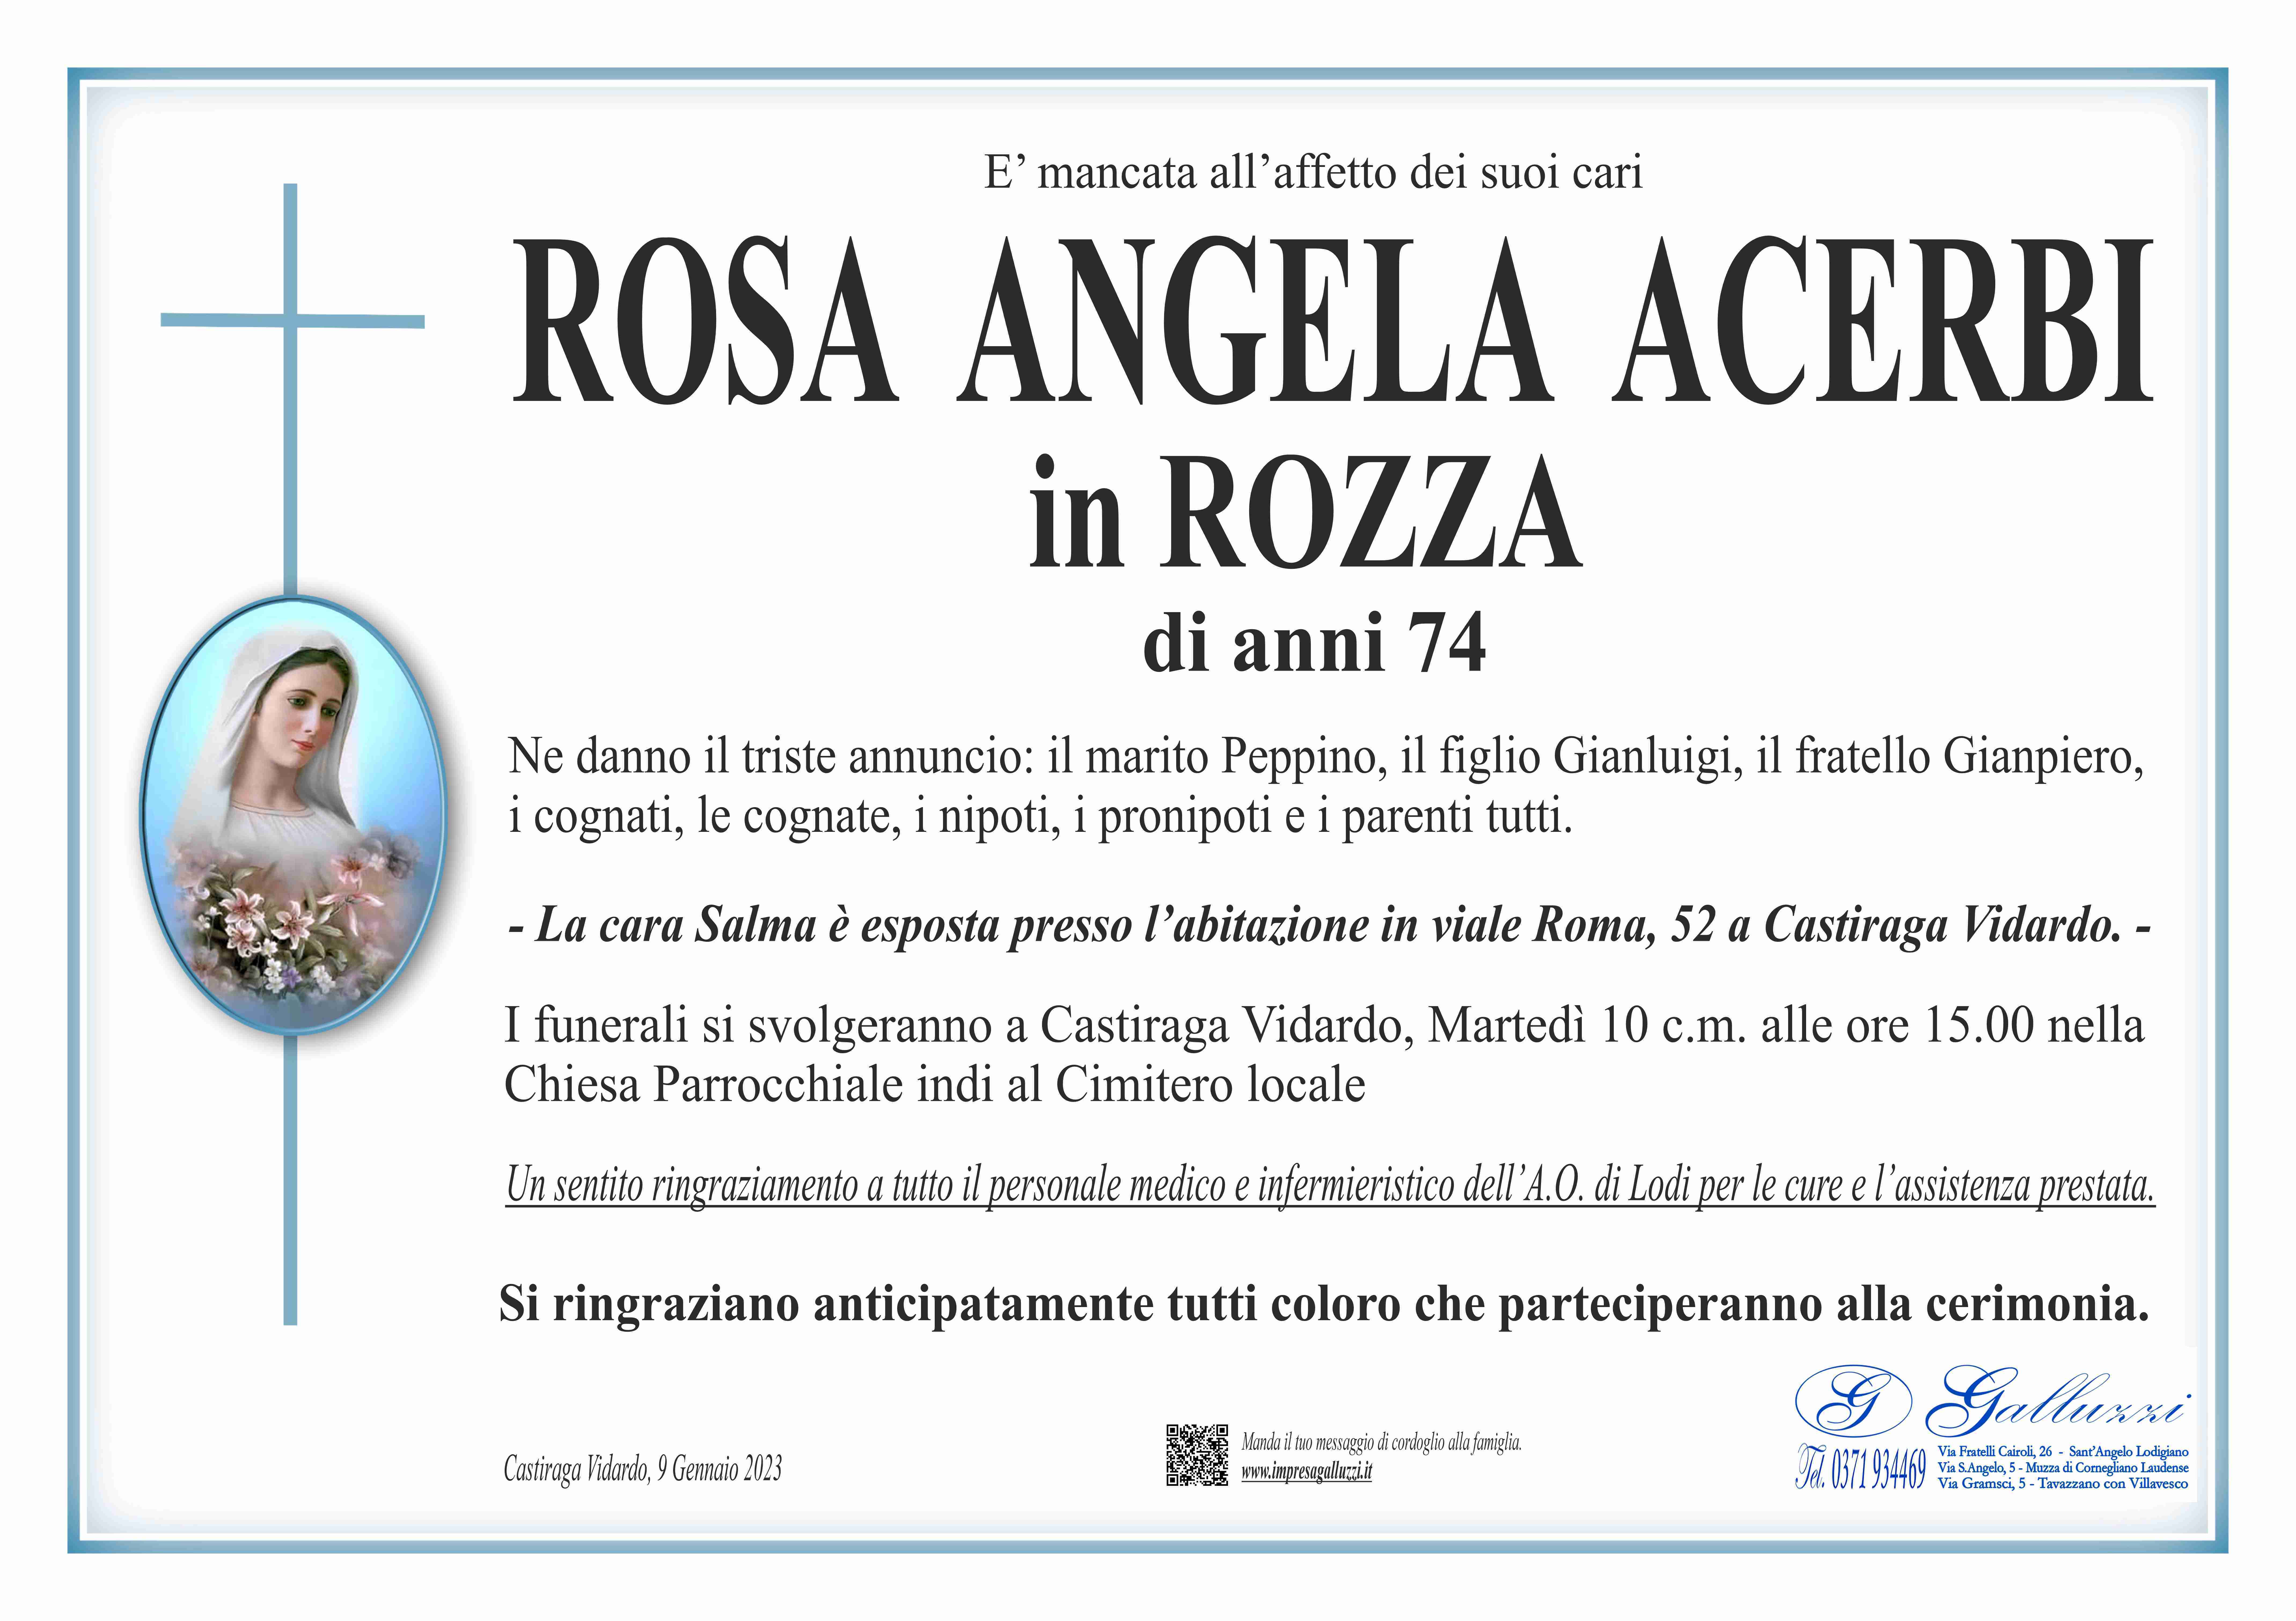 Rosa Angela Acerbi